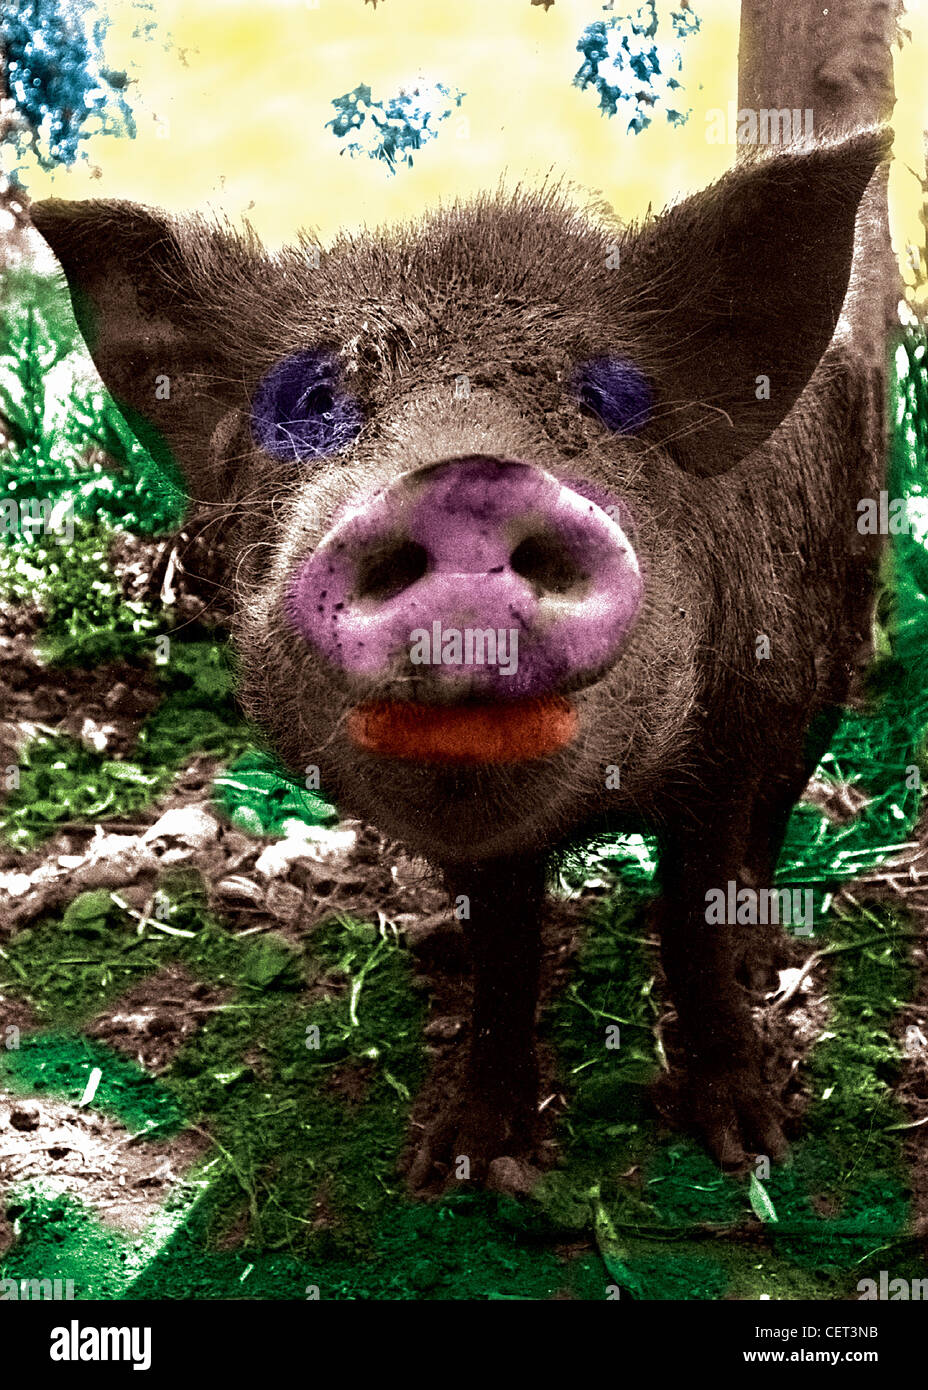 Un gros cochon, close-up photographie grand angle. À l'horizontal, coloriés à la main image sépia. Museau rose, fun humour Banque D'Images